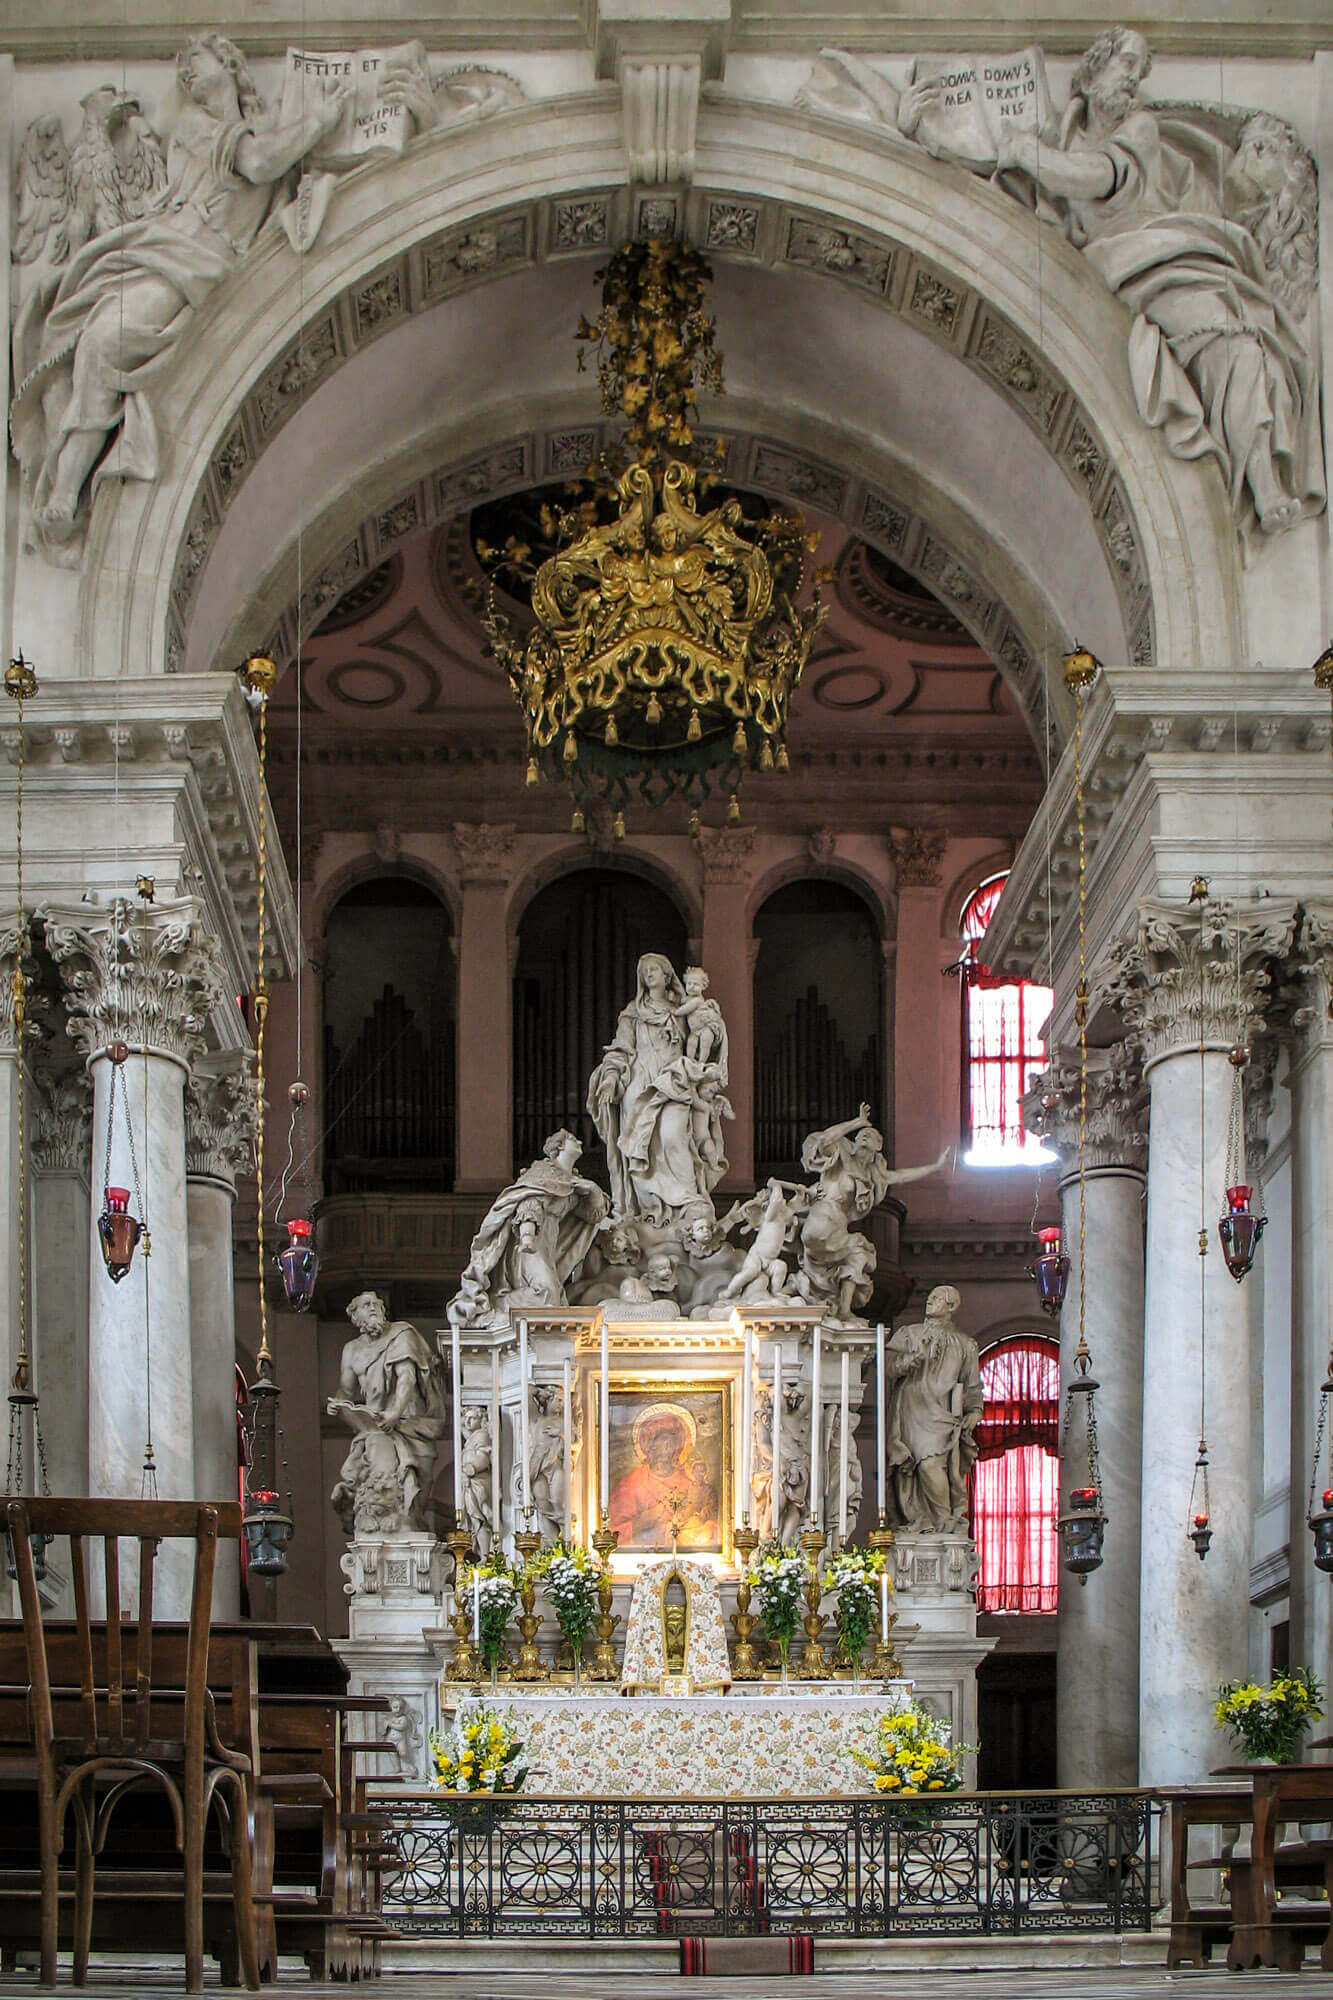 The interior of Santa Maria della Salute basilica in Venice